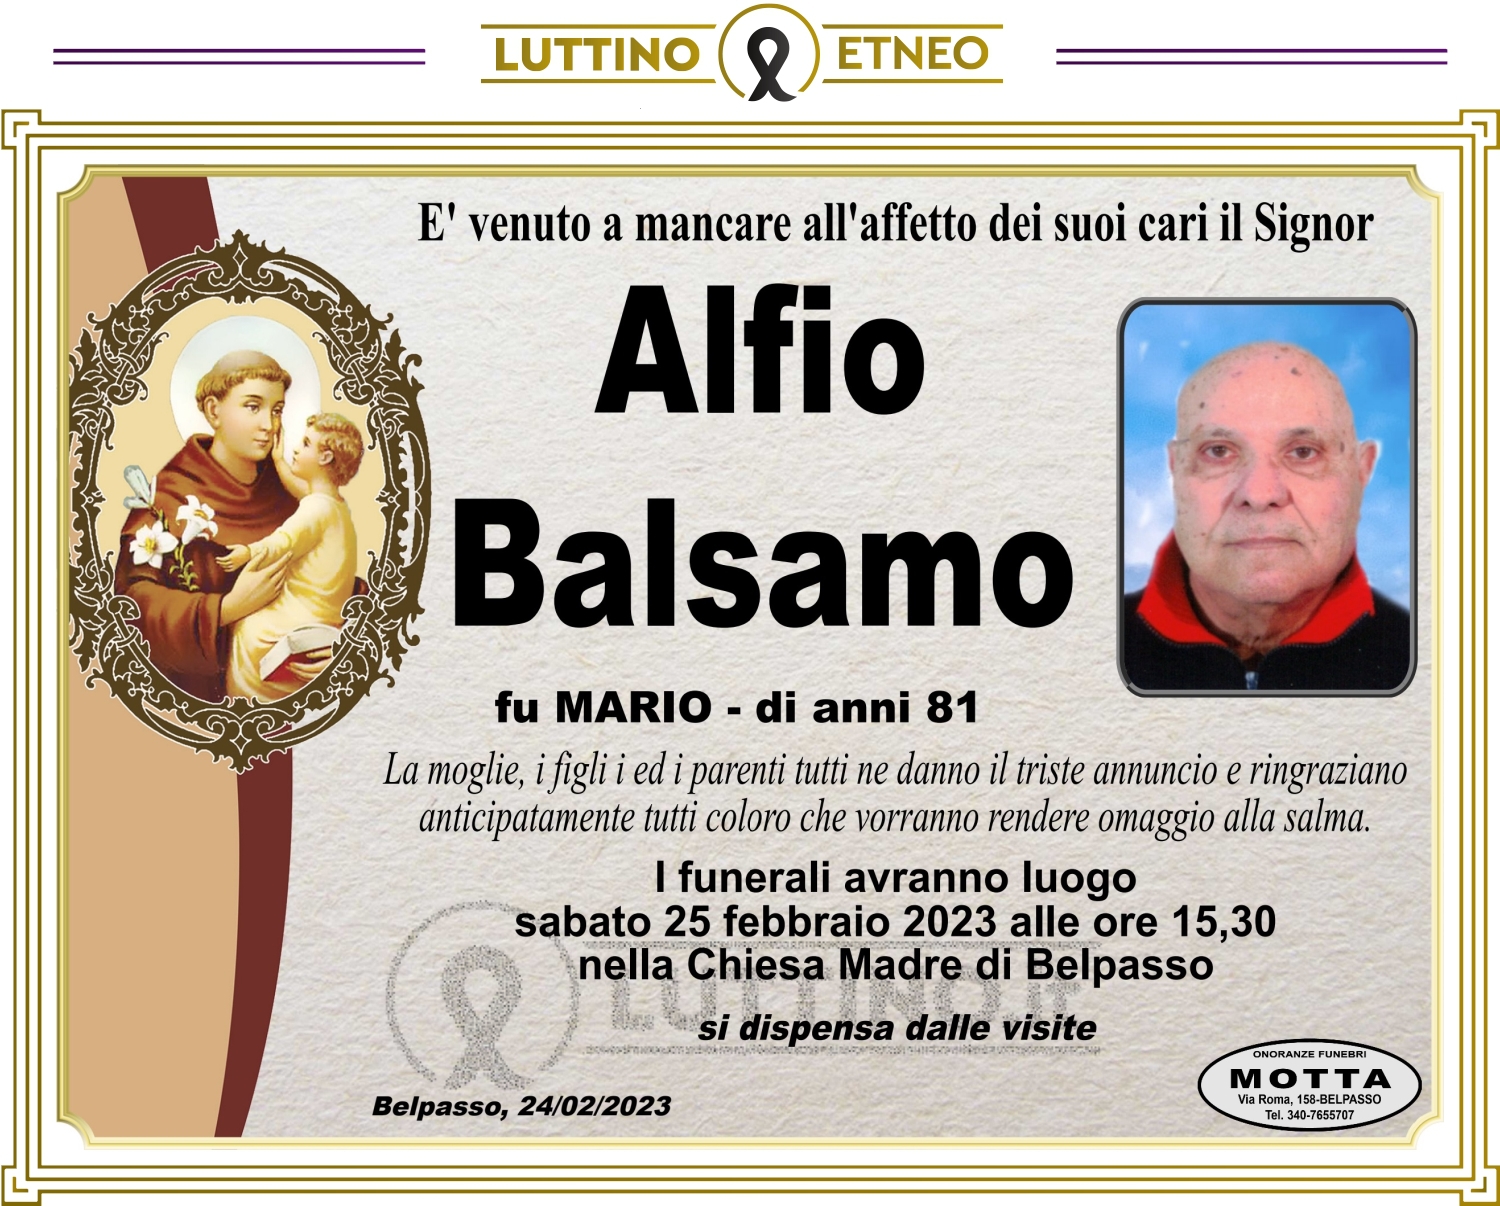 Alfio Balsamo